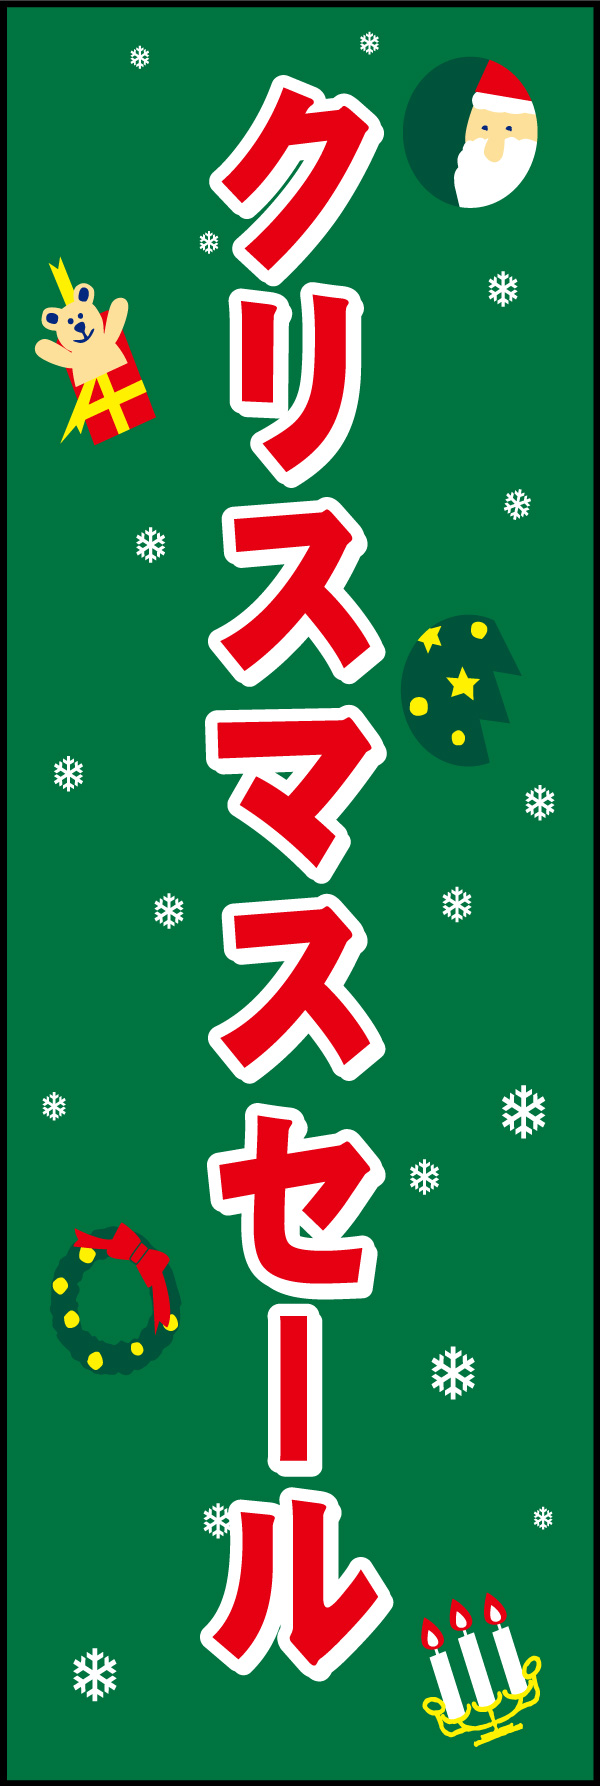 クリスマスセール 04 「クリスマスセール」の幟です。かわいいイラストでポップに仕上げました。(Y.M)